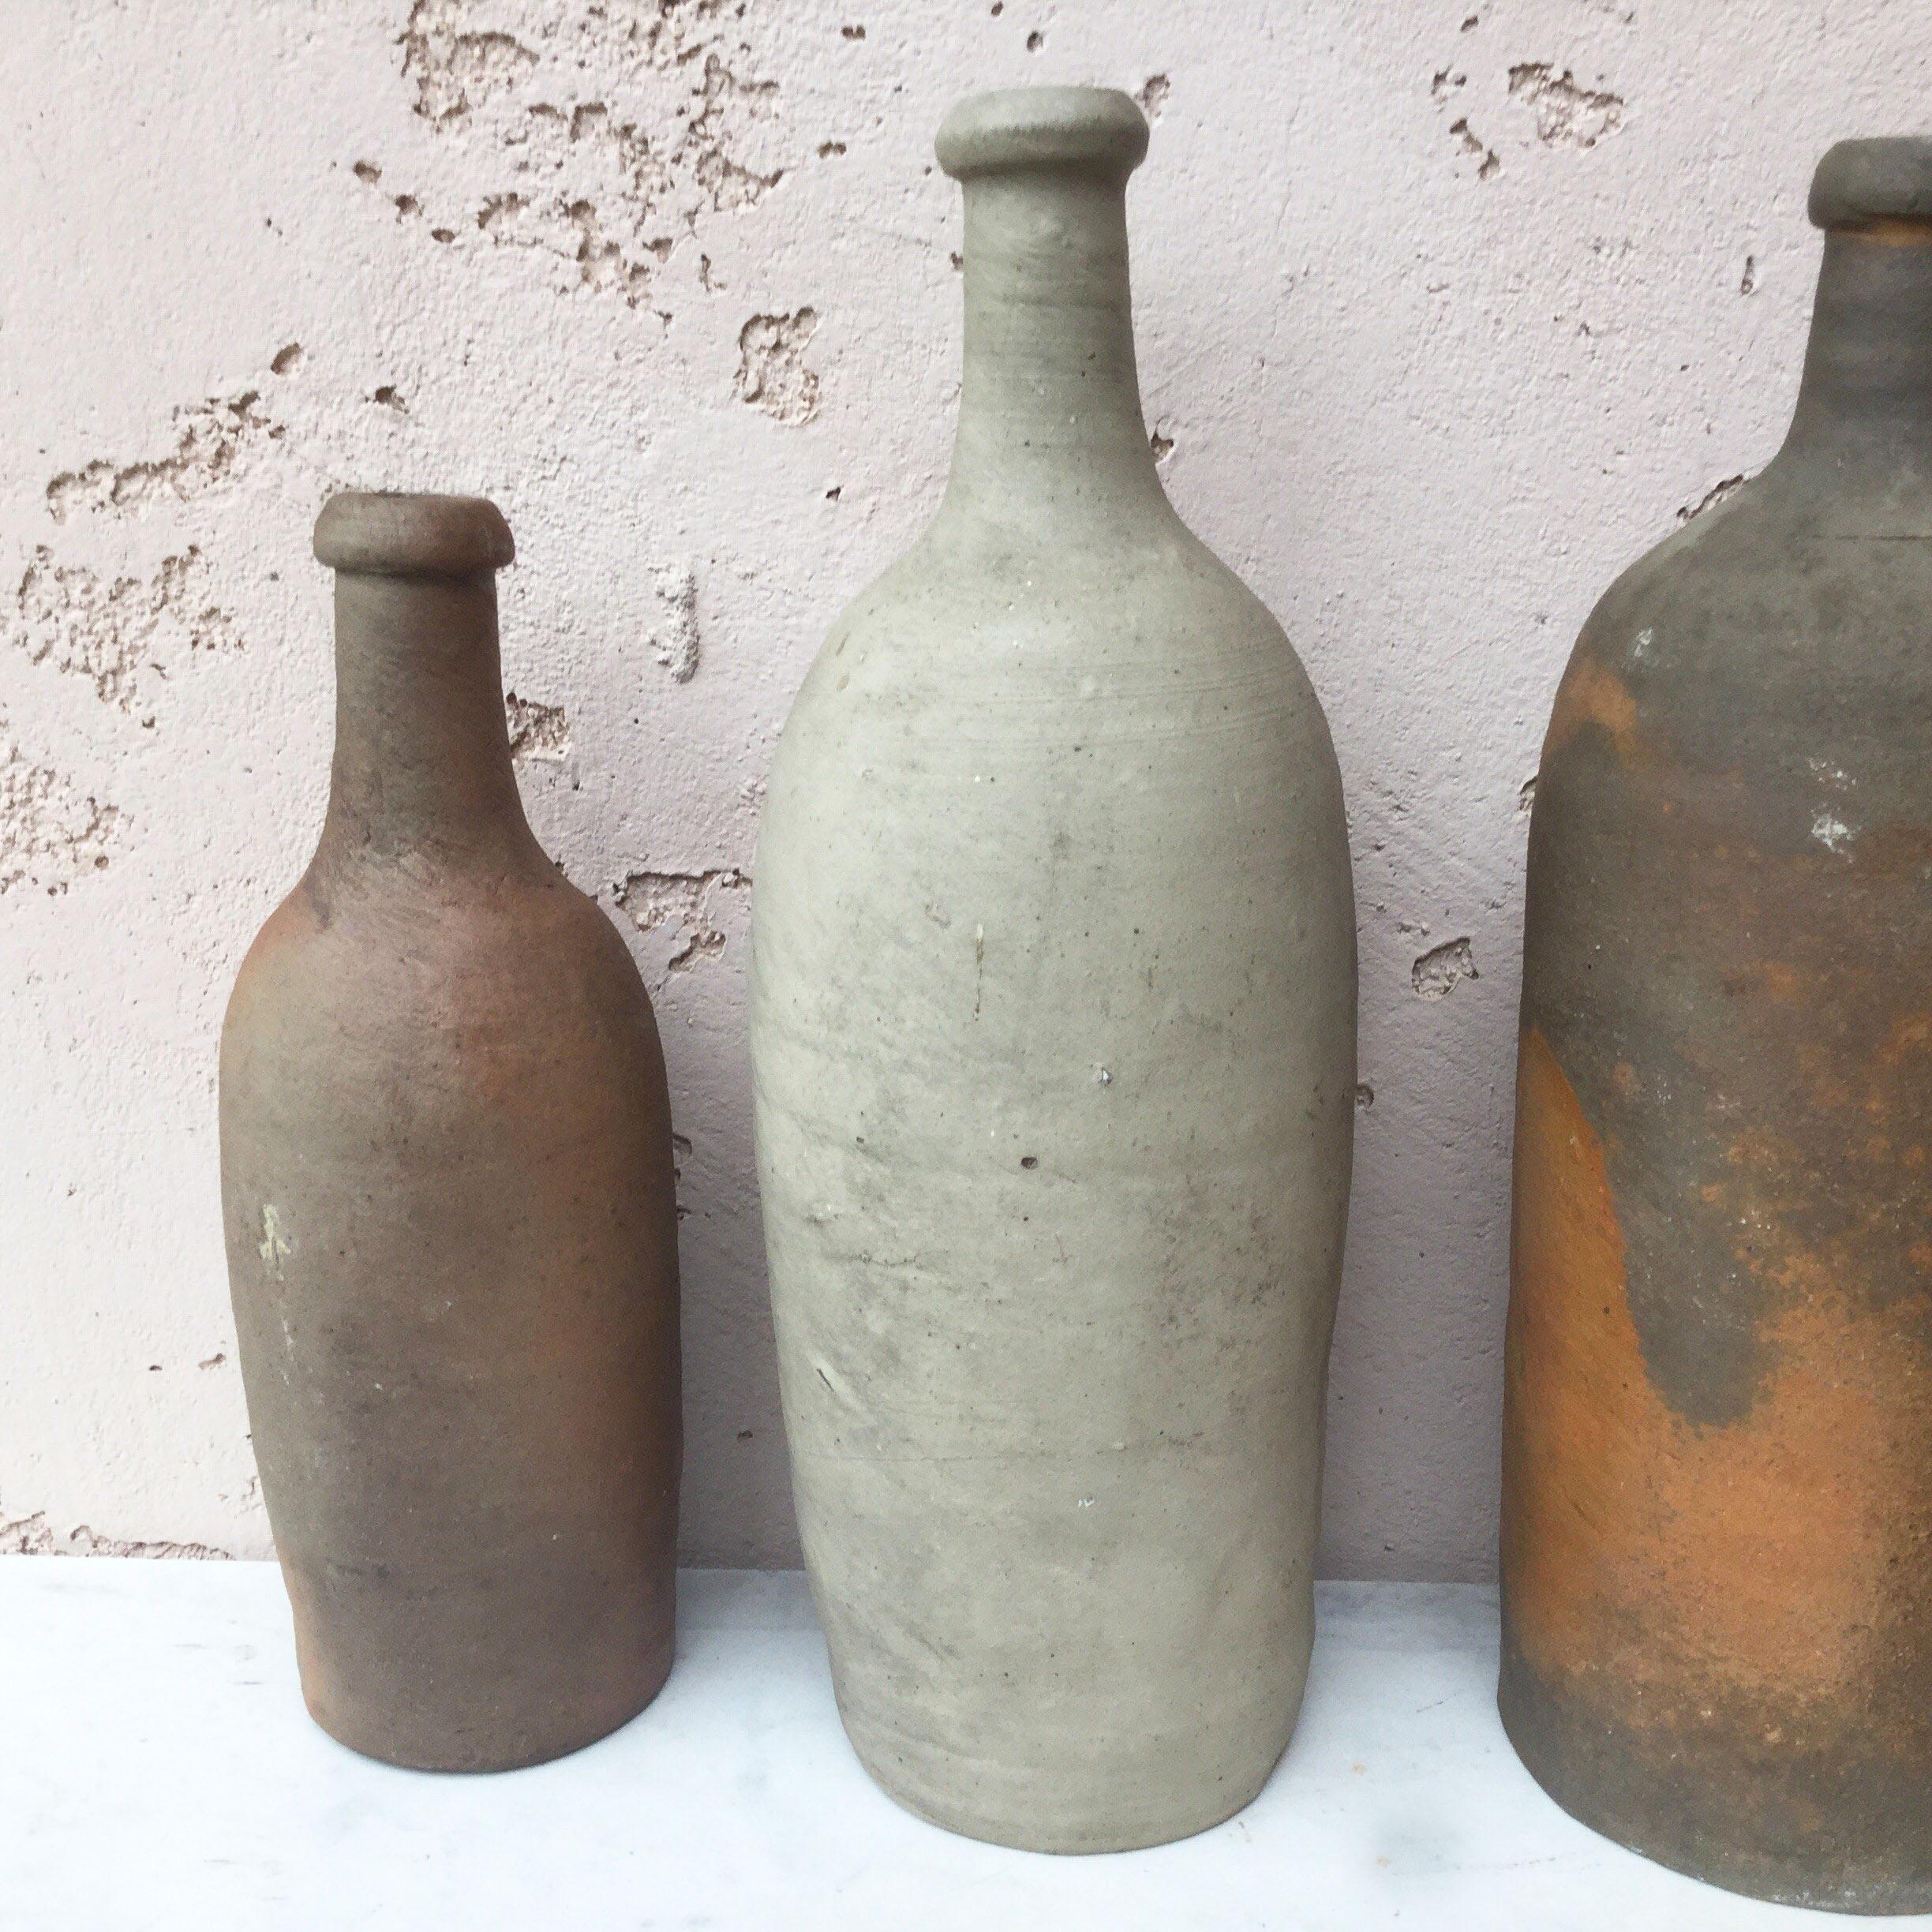 Französische Cidreflasche aus der Normandie, Ende des 19. Jahrhunderts.
13 Flaschen erhältlich, die separat verkauft werden.
Verschiedene Größen.